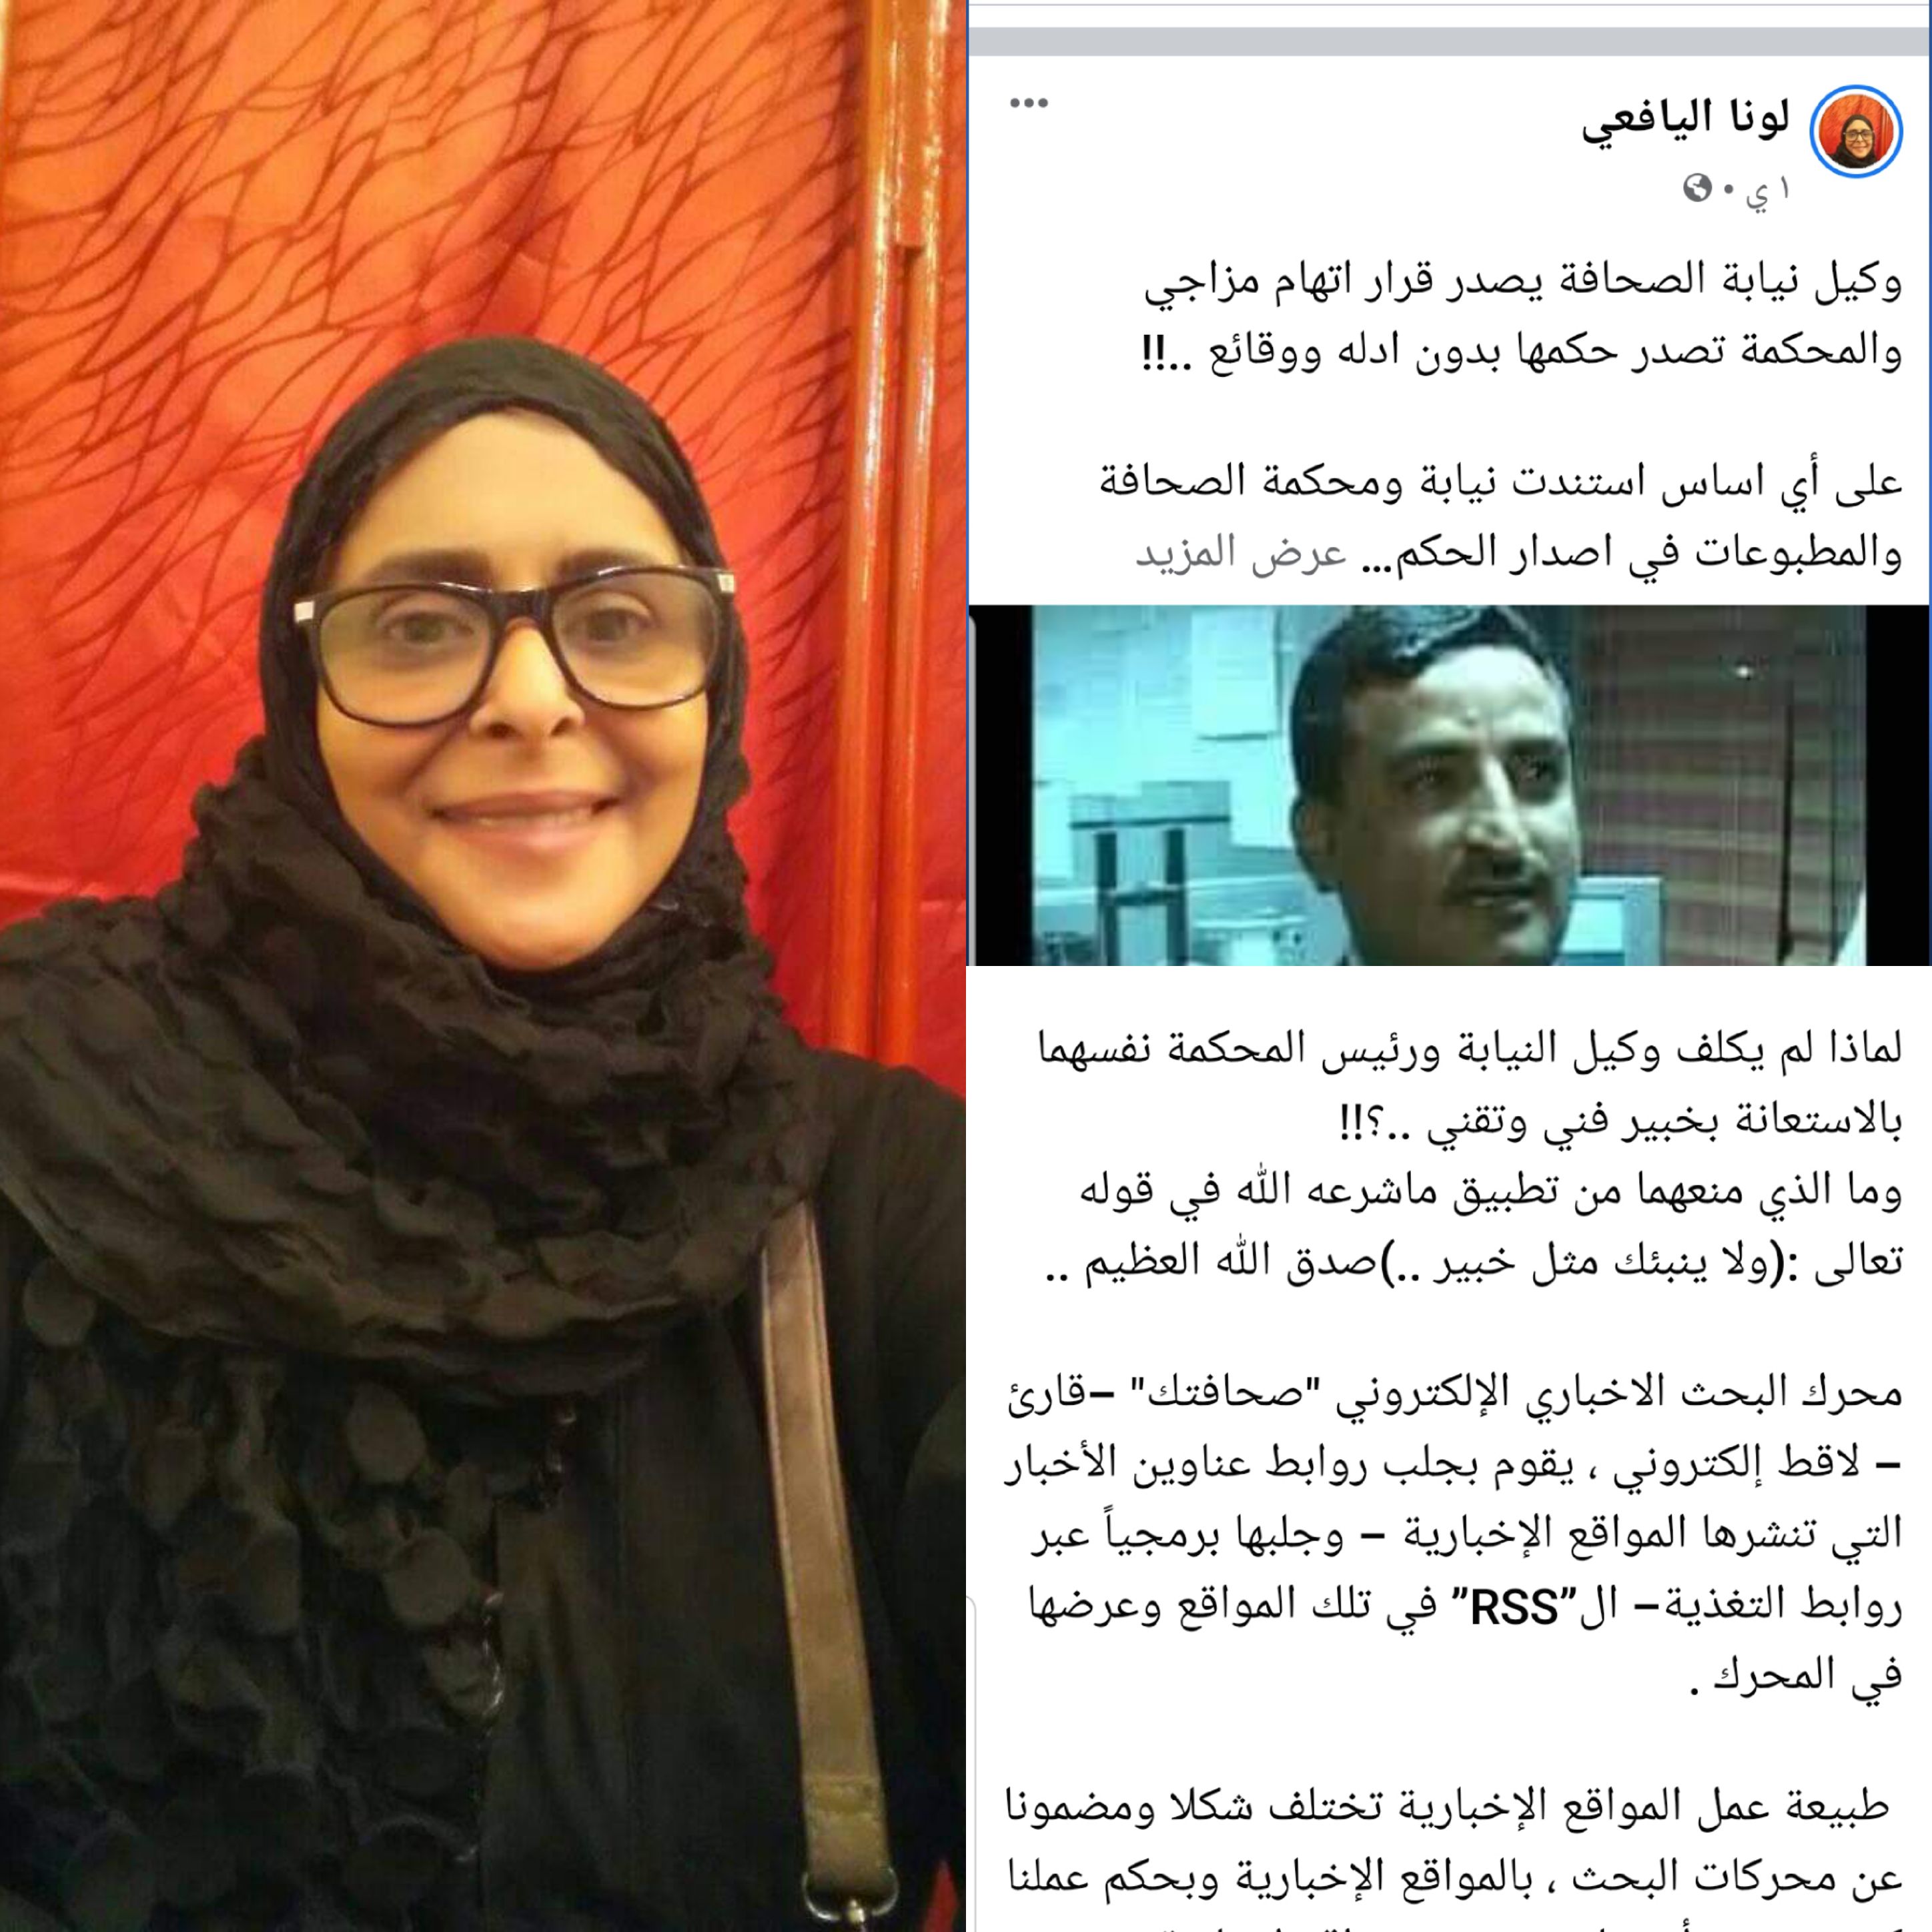 الناشطة والصحفية اليمنية لونا اليافعي نيابة ومحكمة الصحافة تصدر حكما جائرا بدون ادله ووقائع